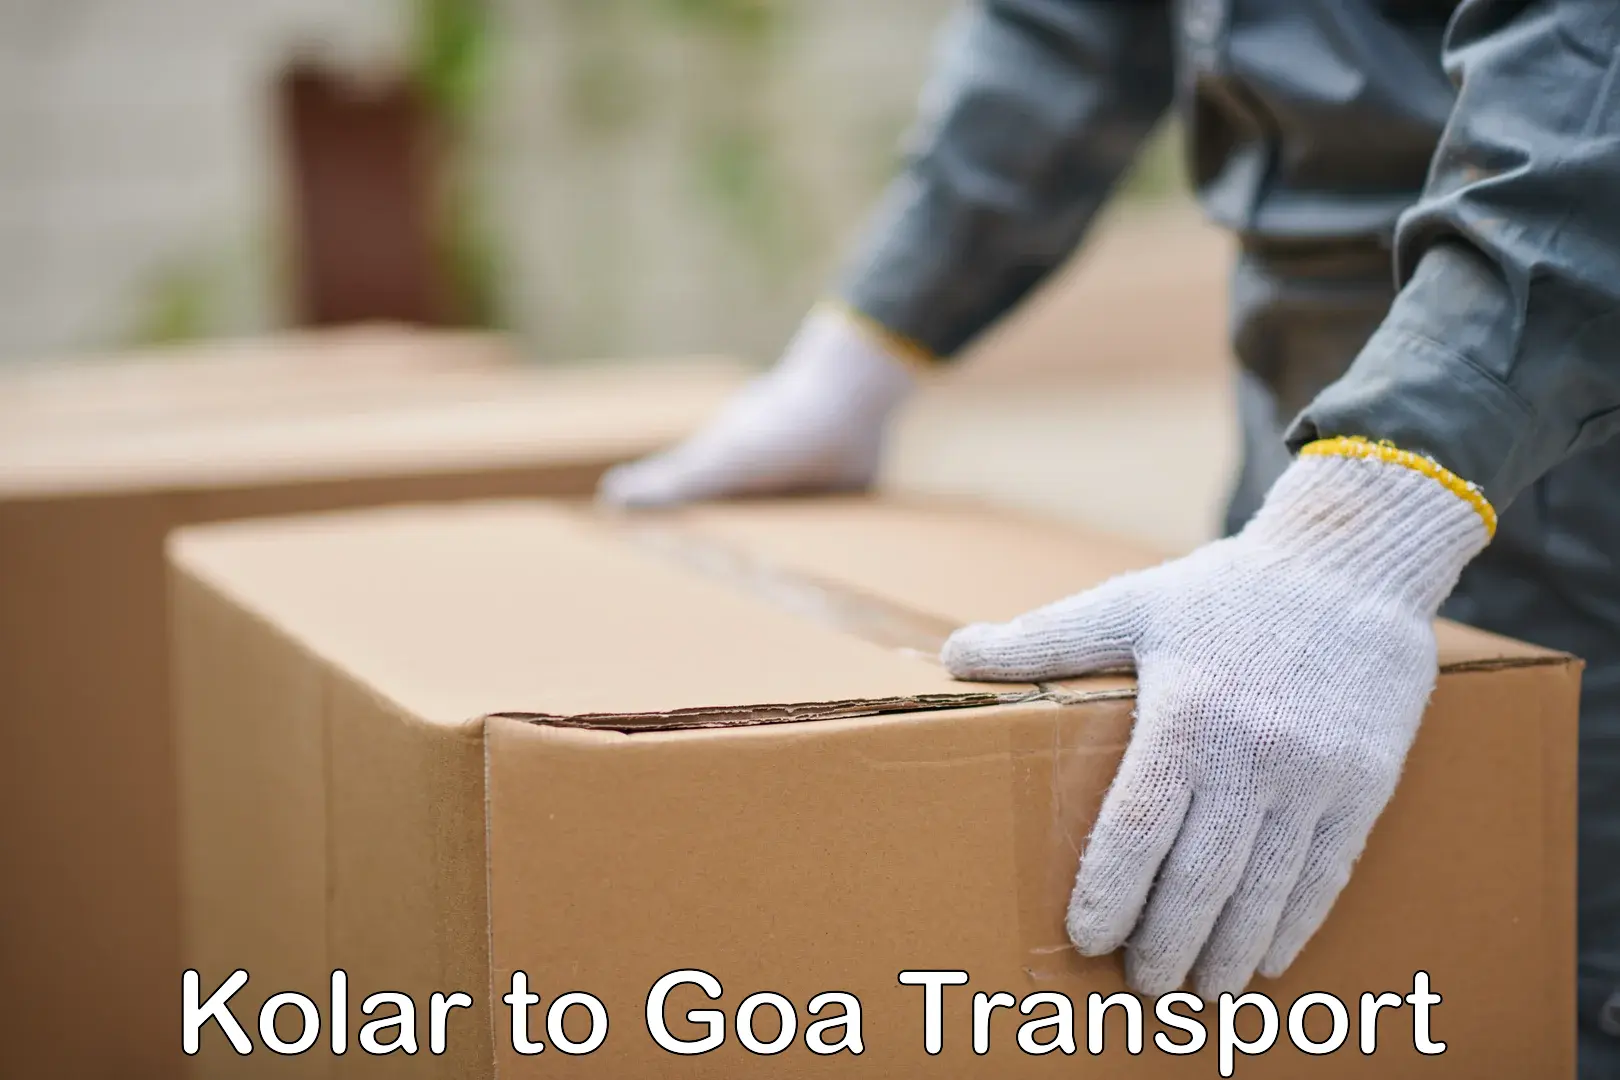 Bike shipping service Kolar to Goa